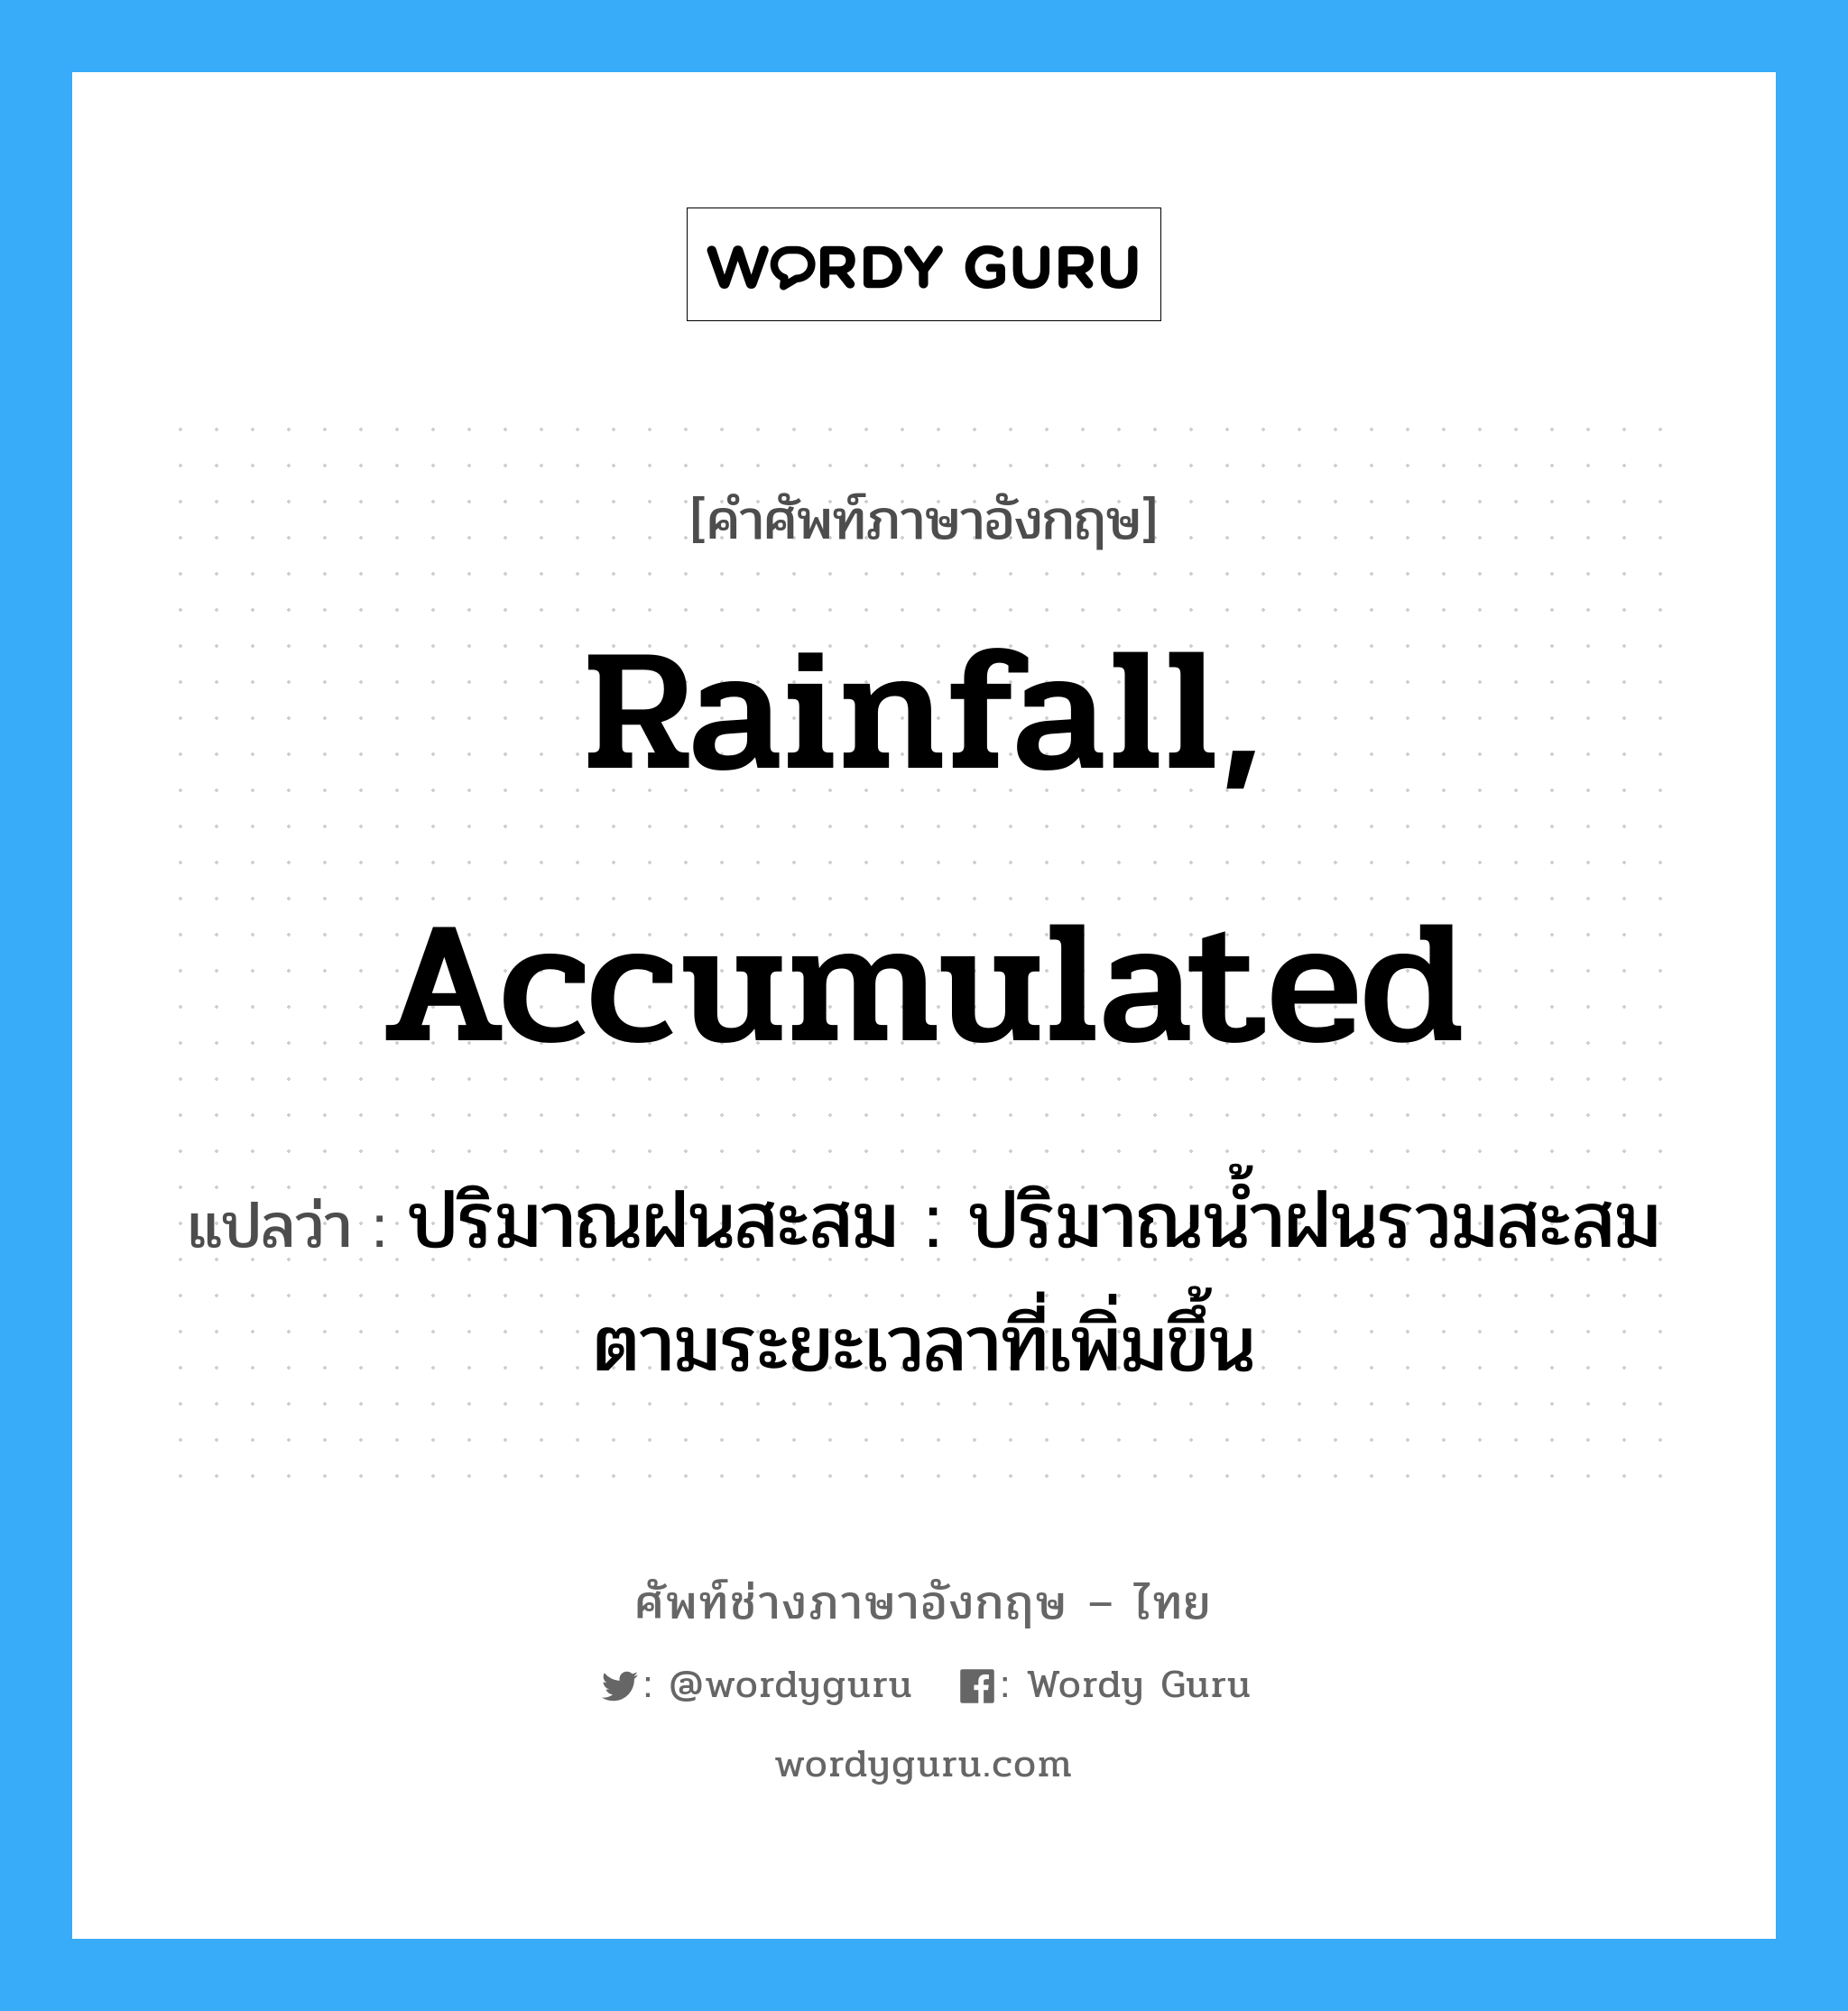 rainfall, accumulated แปลว่า?, คำศัพท์ช่างภาษาอังกฤษ - ไทย rainfall, accumulated คำศัพท์ภาษาอังกฤษ rainfall, accumulated แปลว่า ปริมาณฝนสะสม : ปริมาณน้ำฝนรวมสะสมตามระยะเวลาที่เพิ่มขึ้น